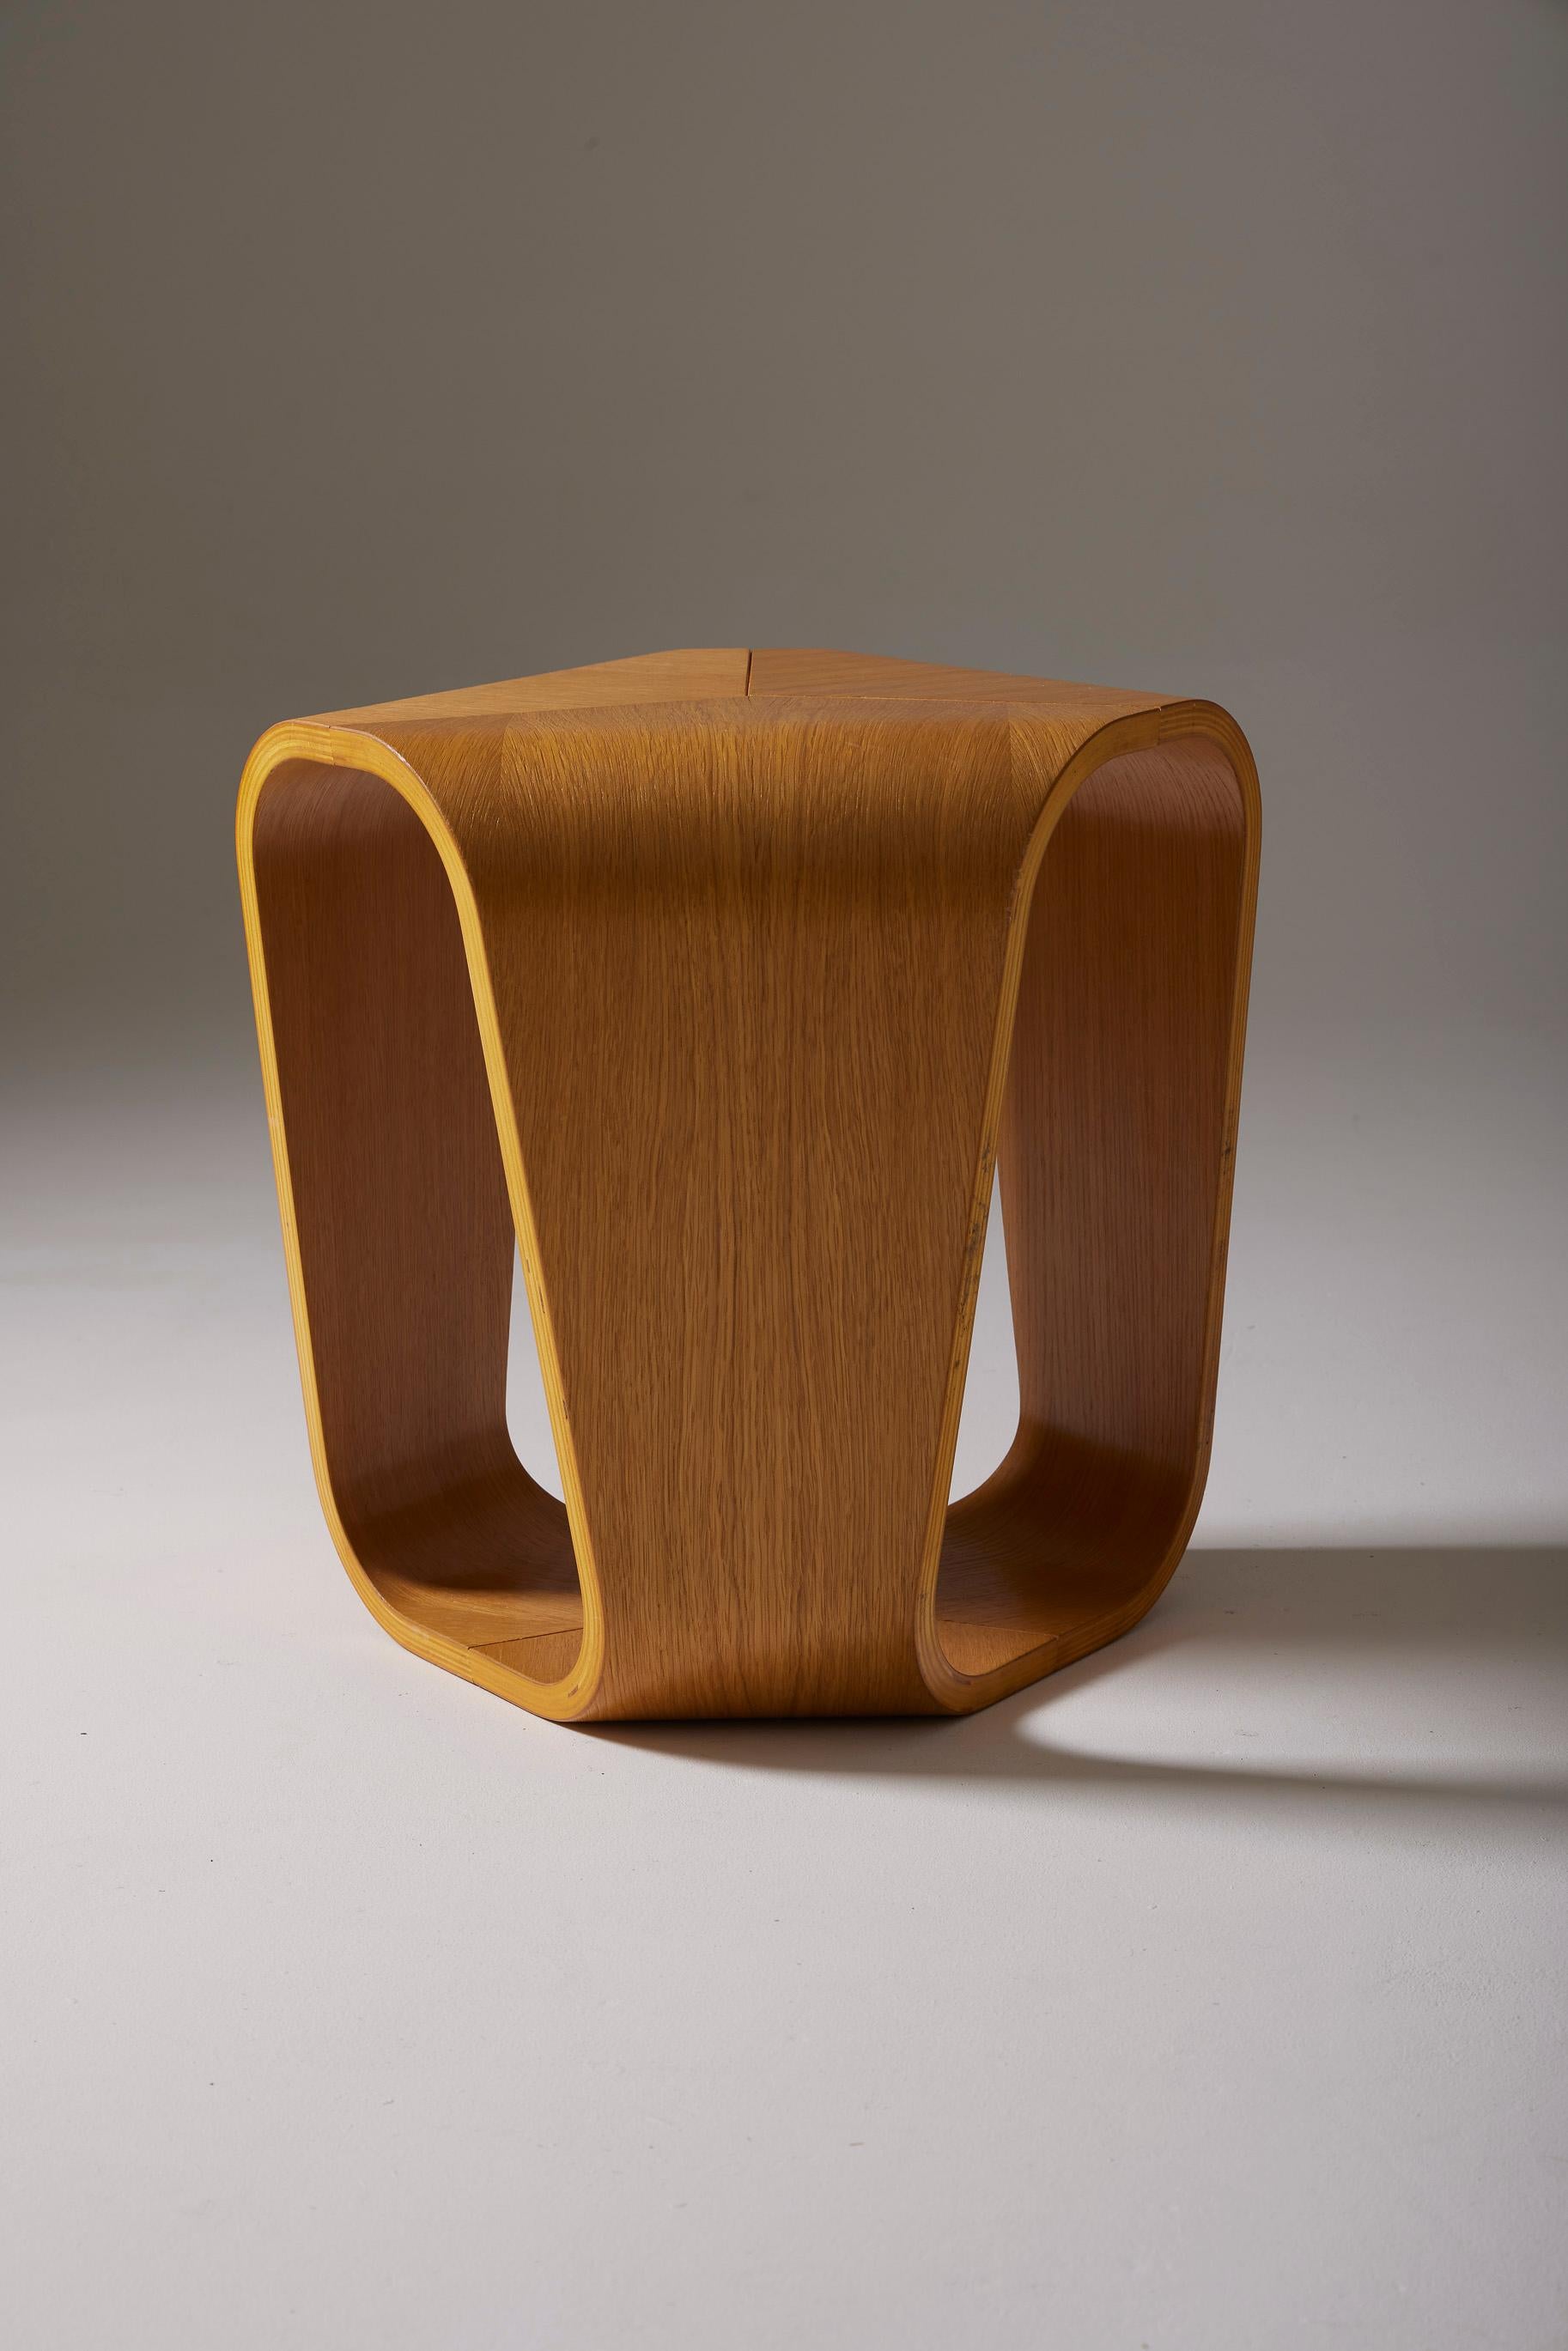 Tabouret ou table d'appoint en bois réalisé par le designer italien Enrico Cesana pour Busnelli dans les années 1990. Le design de ce tabouret reprend le goût des années 1970 et résonne avec les échos de l'ère du design de l'ère spatiale. Une très